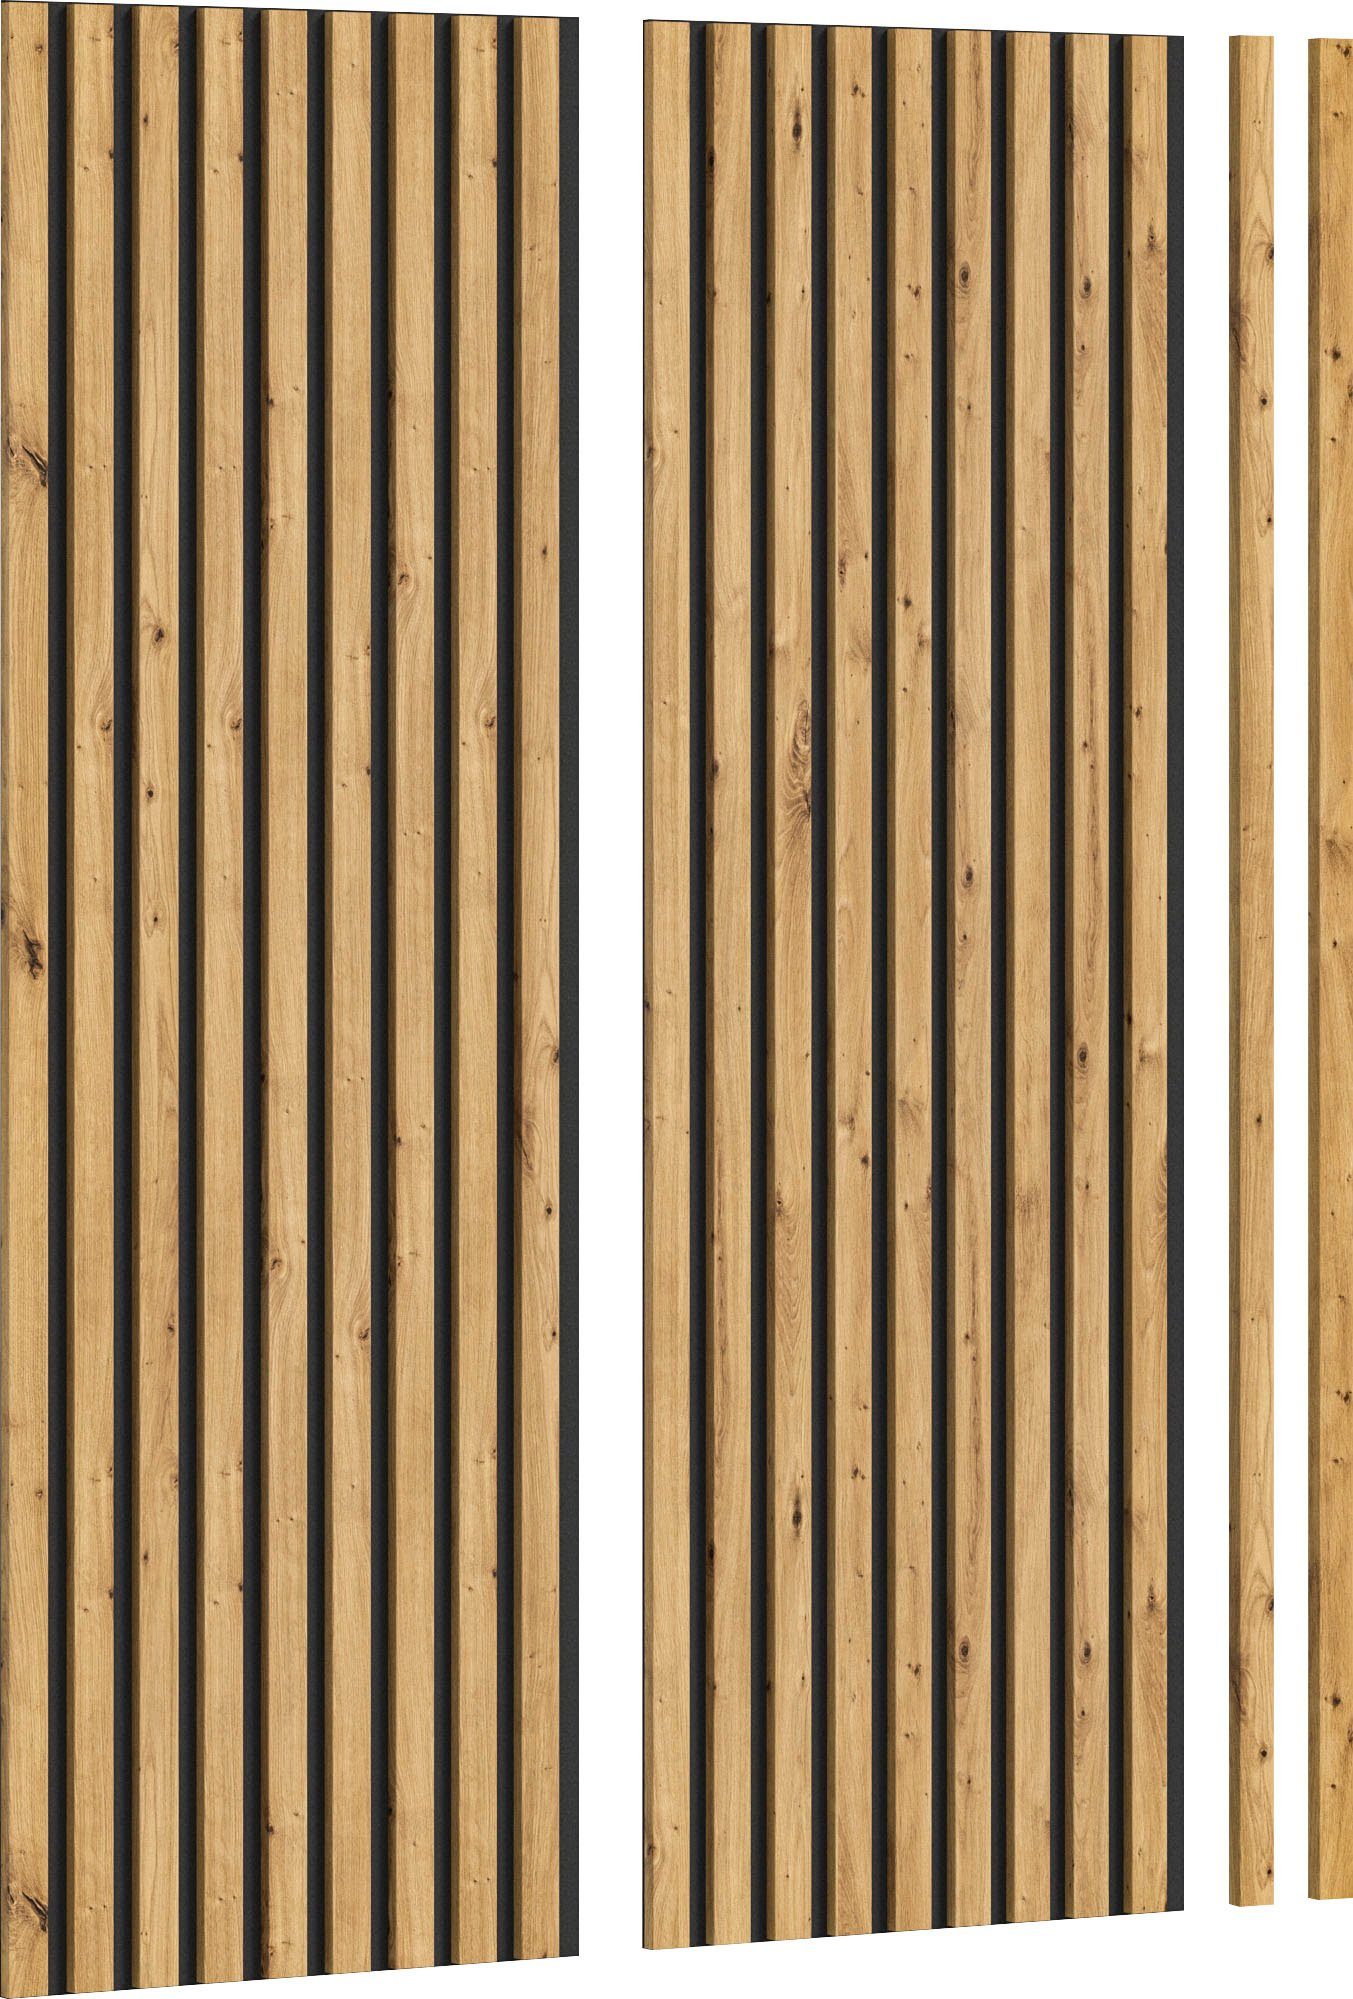 INOSIGN Wandpaneel Silencio, 40 x cm, 40x120 (2-tlg) 120 cm BxL